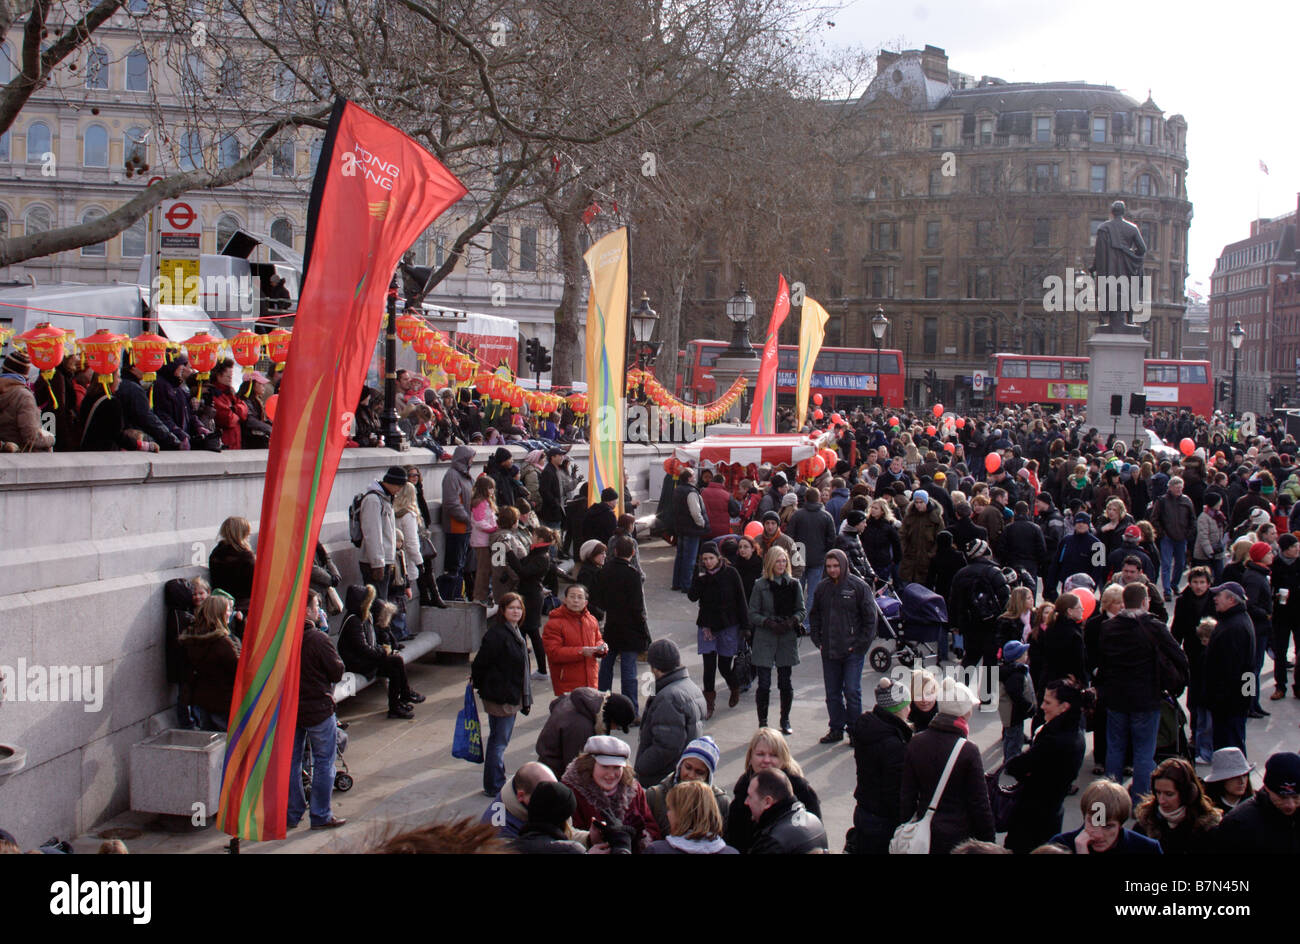 Los espectadores en Trafalgar Square en Londres las celebraciones del Año Nuevo chino 2009 Foto de stock